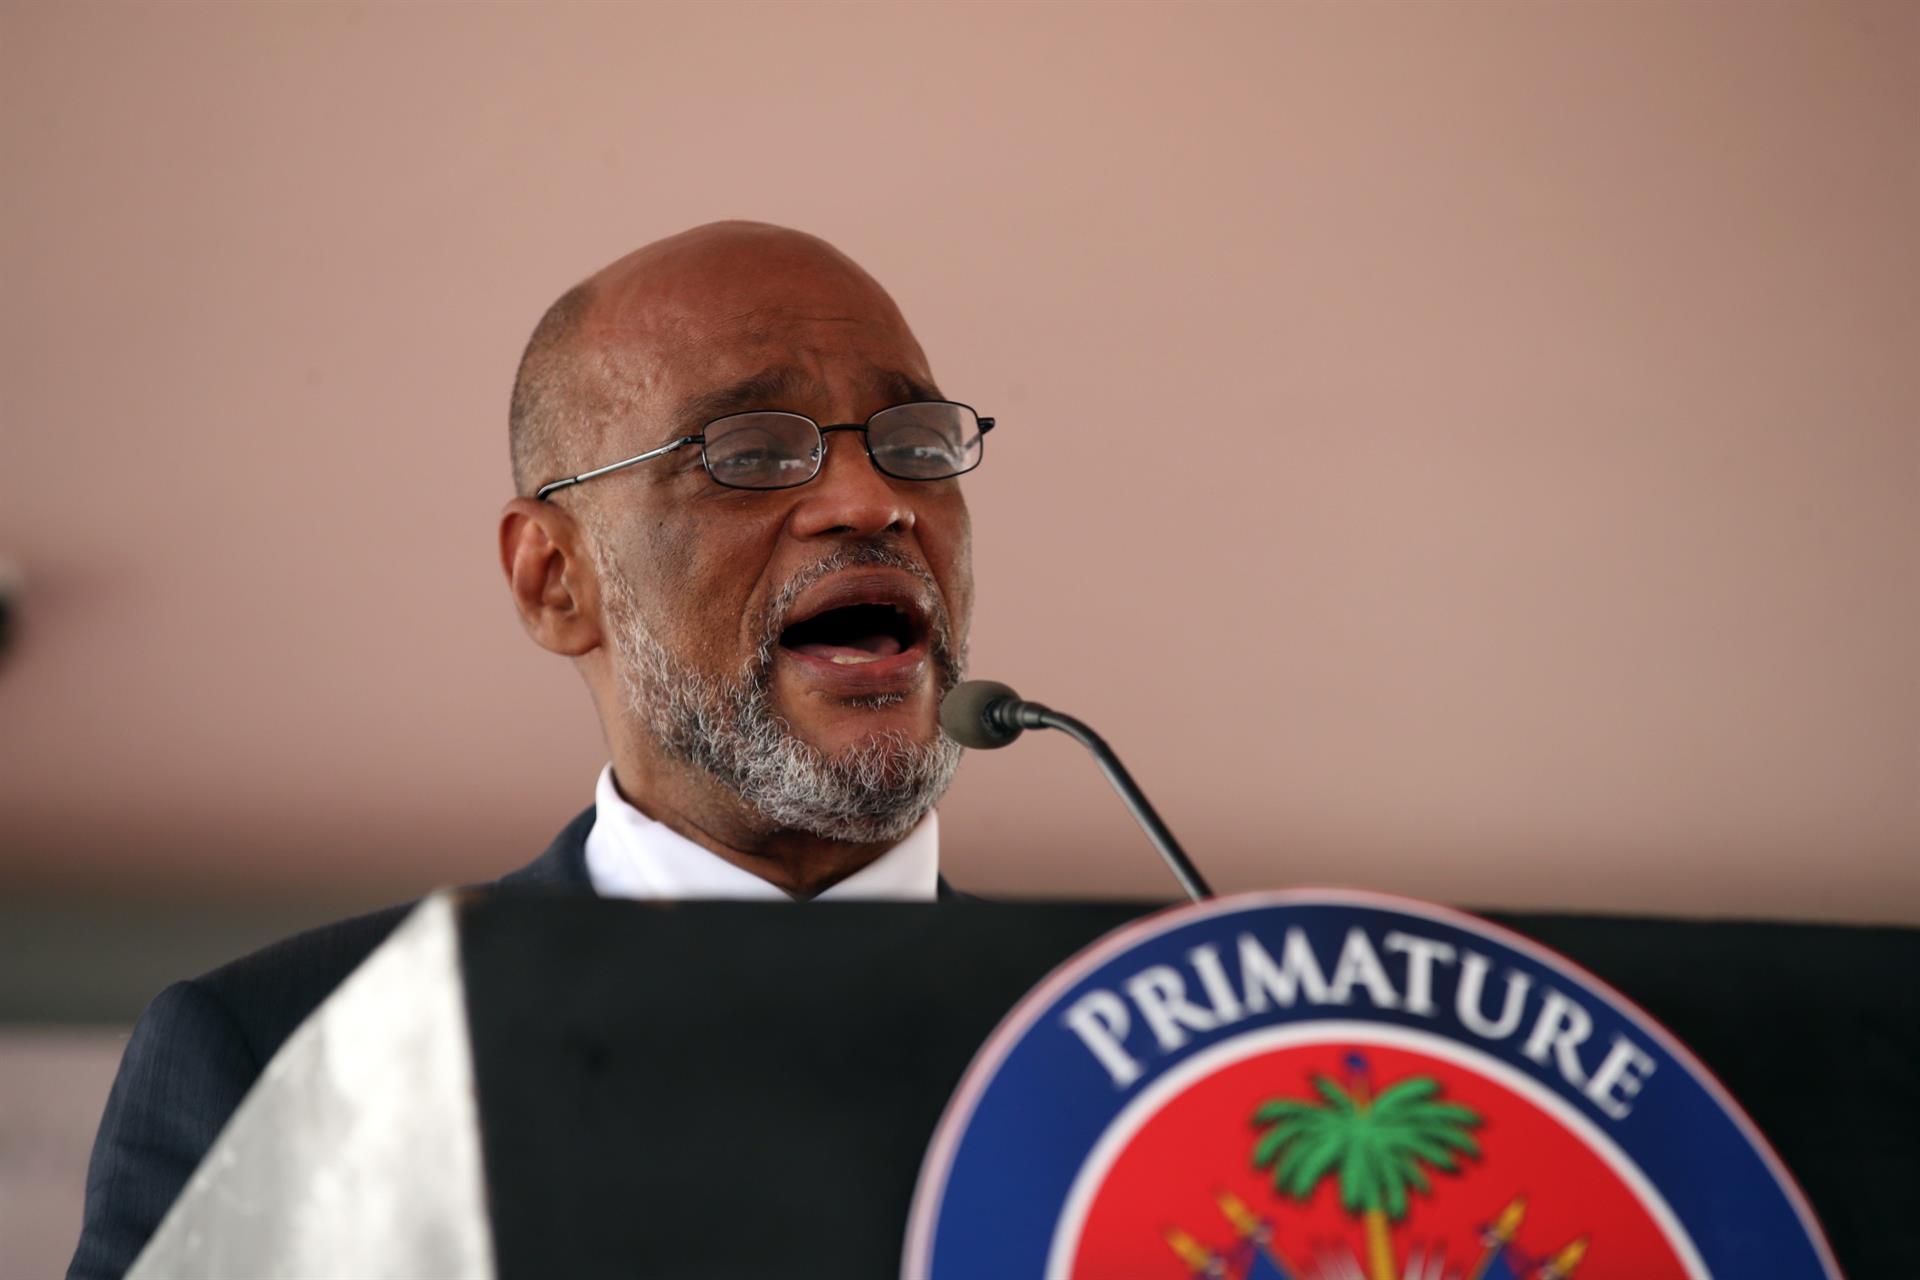 Henry promete un diálogo "sincero" con la oposición haitiana